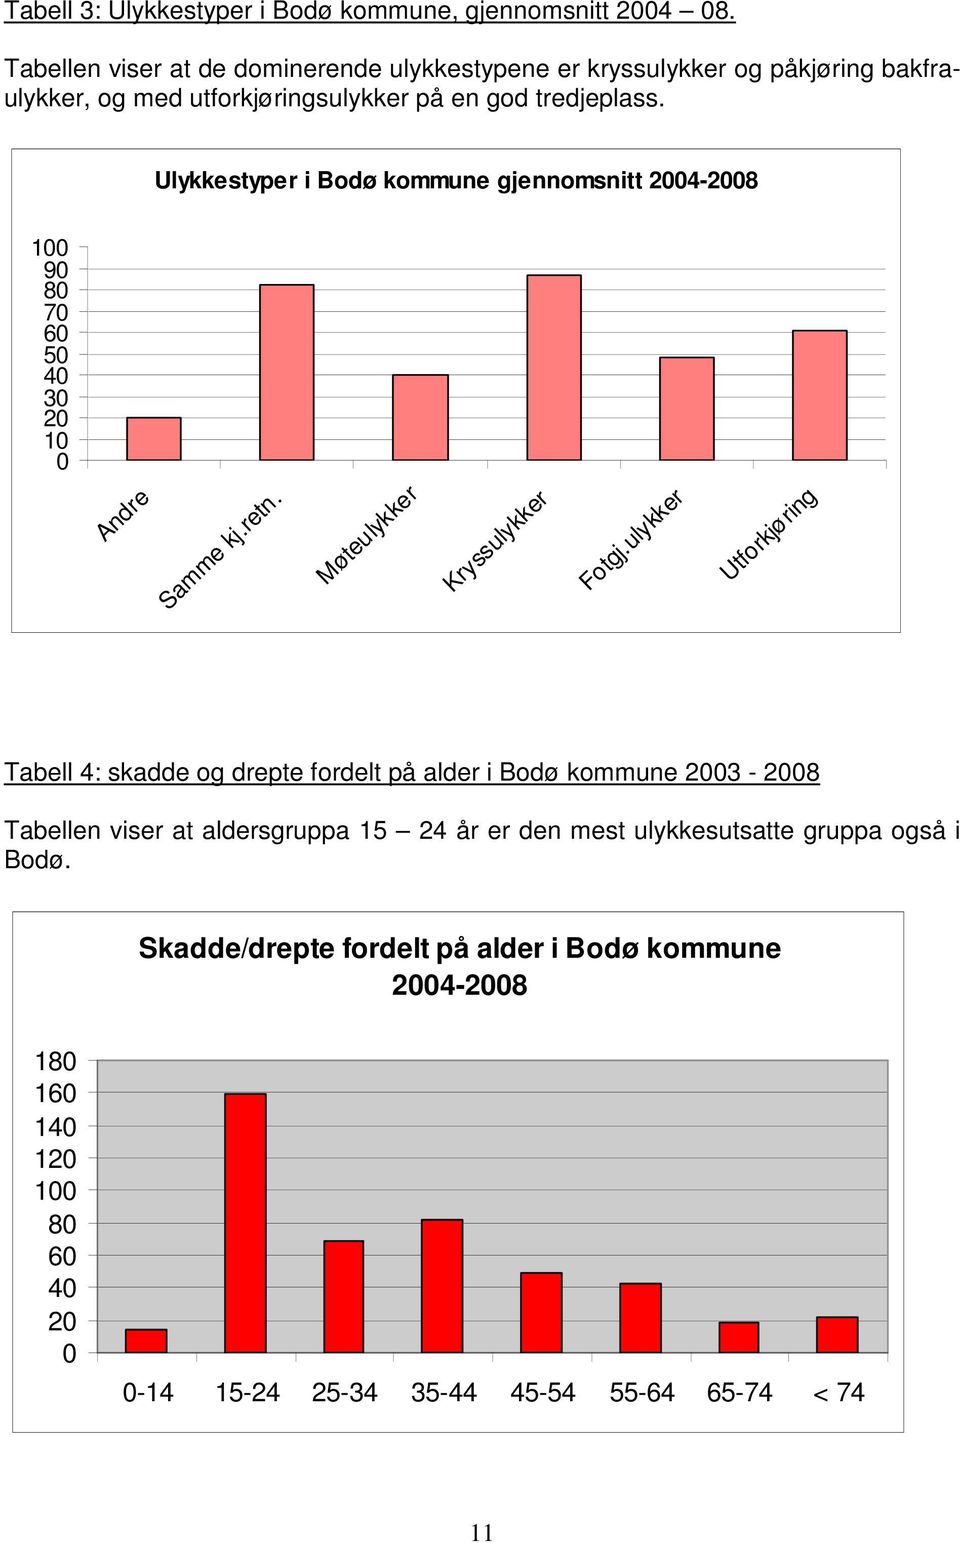 Ulykkestyper i Bodø kommune gjennomsnitt 2004-2008 100 90 80 70 60 50 40 30 20 10 0 Andre Samme kj.retn. Møteulykker Kryssulykker Fotgj.